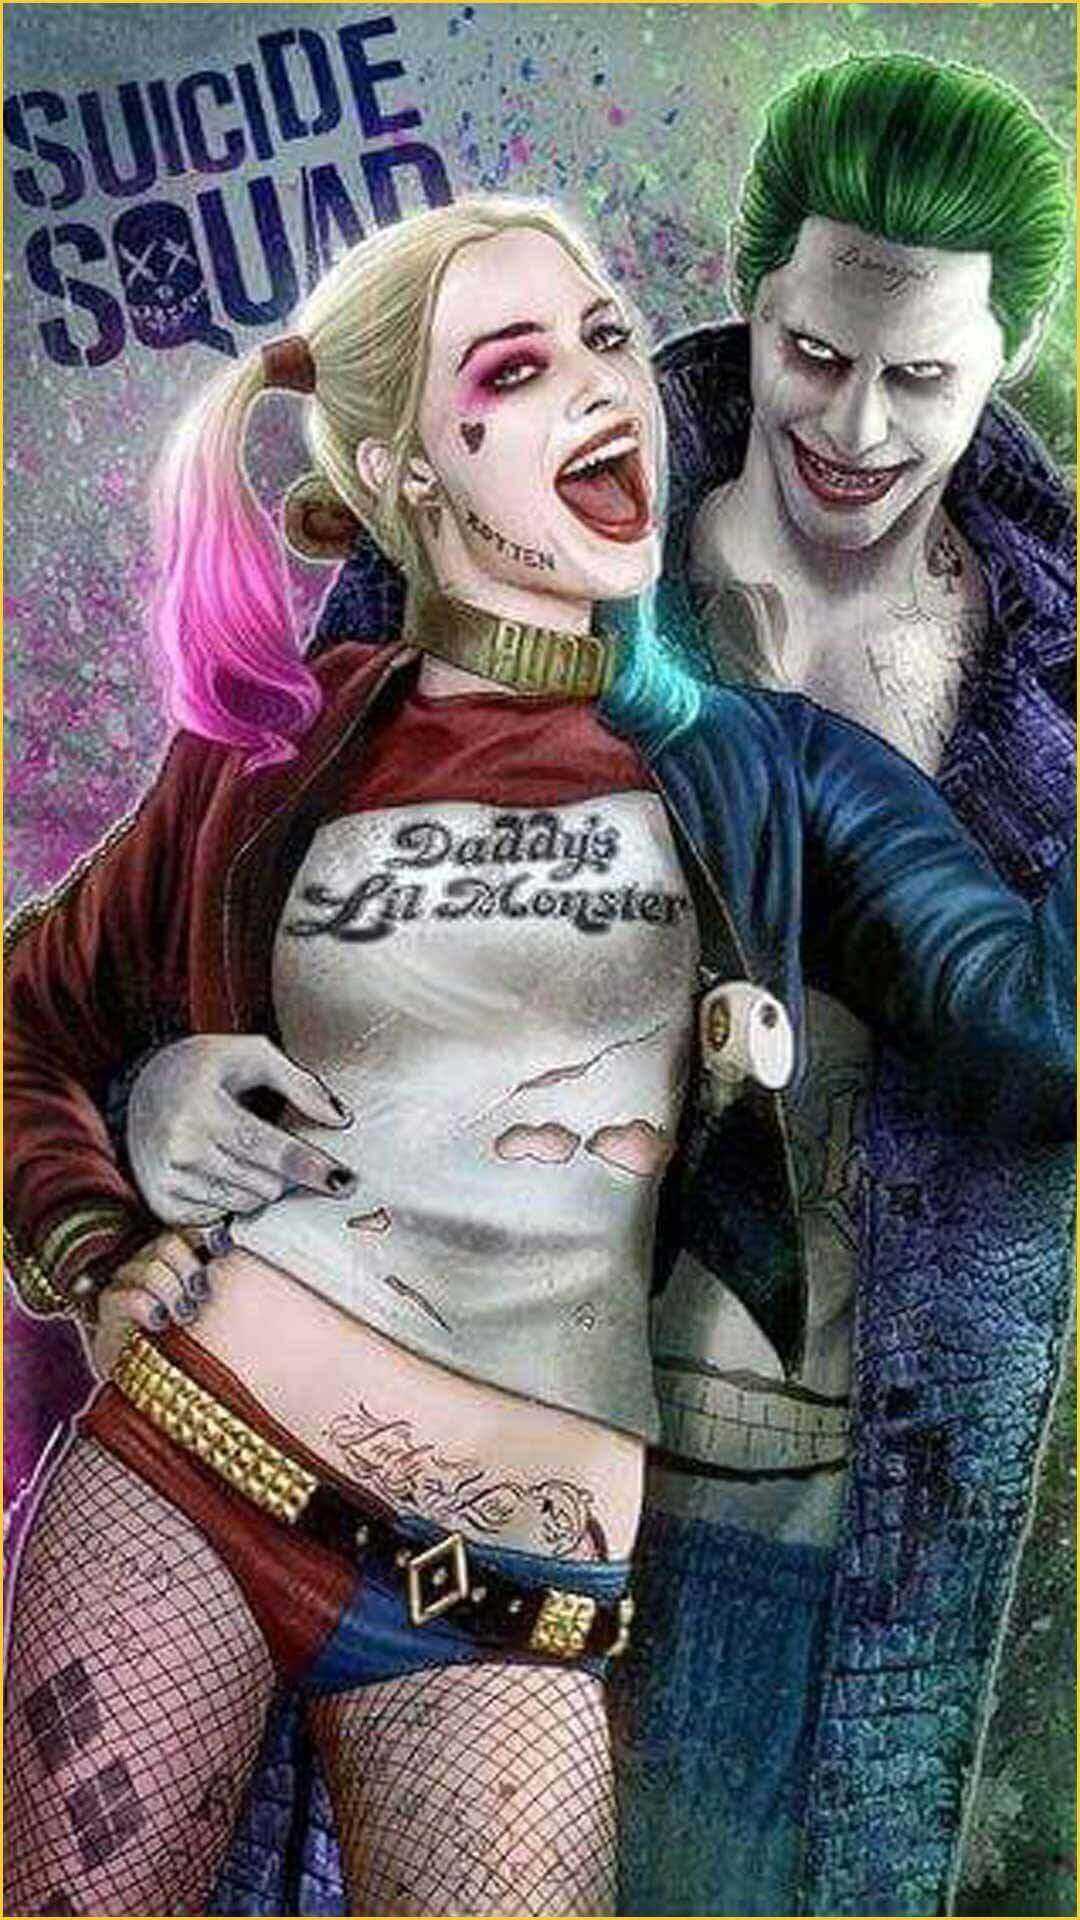 40 Gambar Joker and Harley Quinn Iphone Wallpaper Hd terbaru 2020